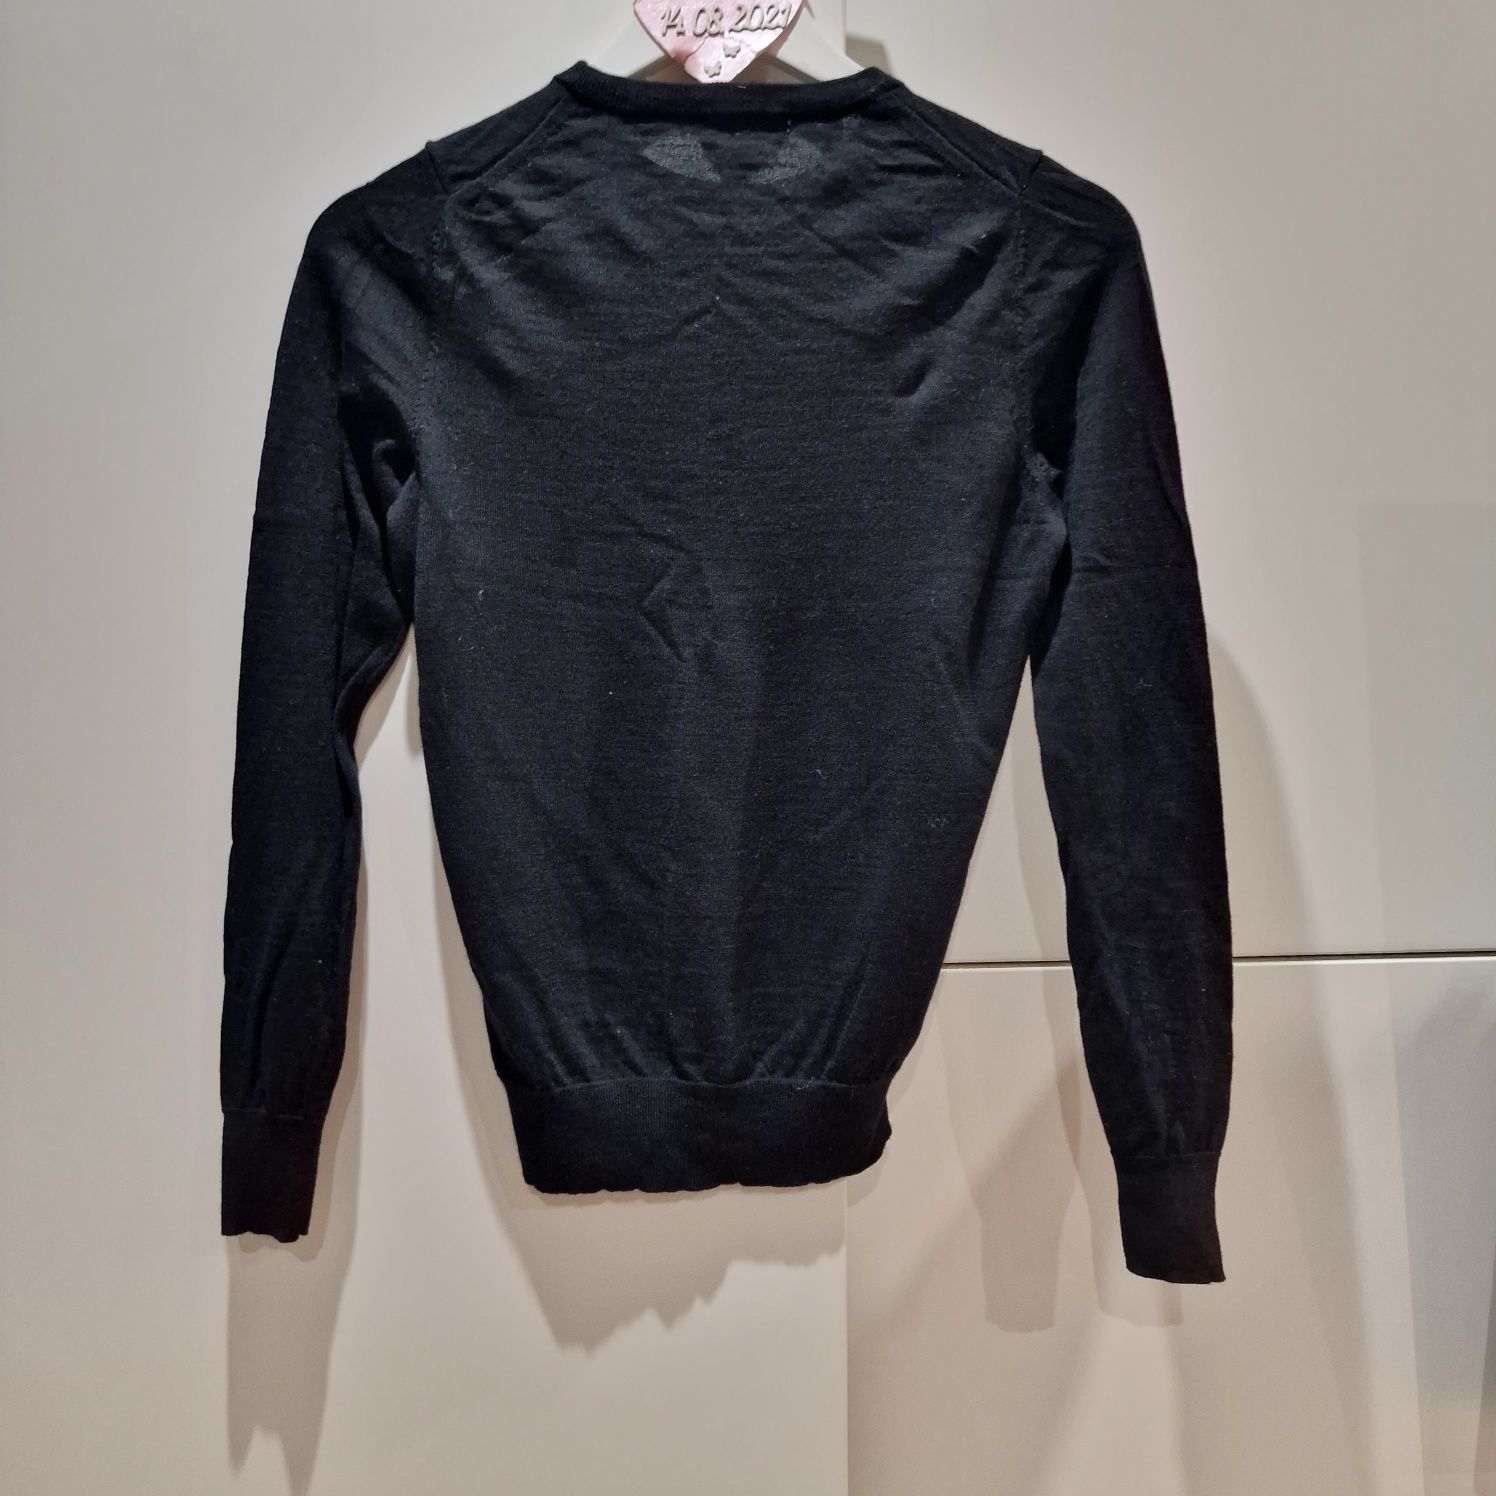 Sweter uniqlo s 36 wełna merino wool Allude Celiene Massimo Dutti